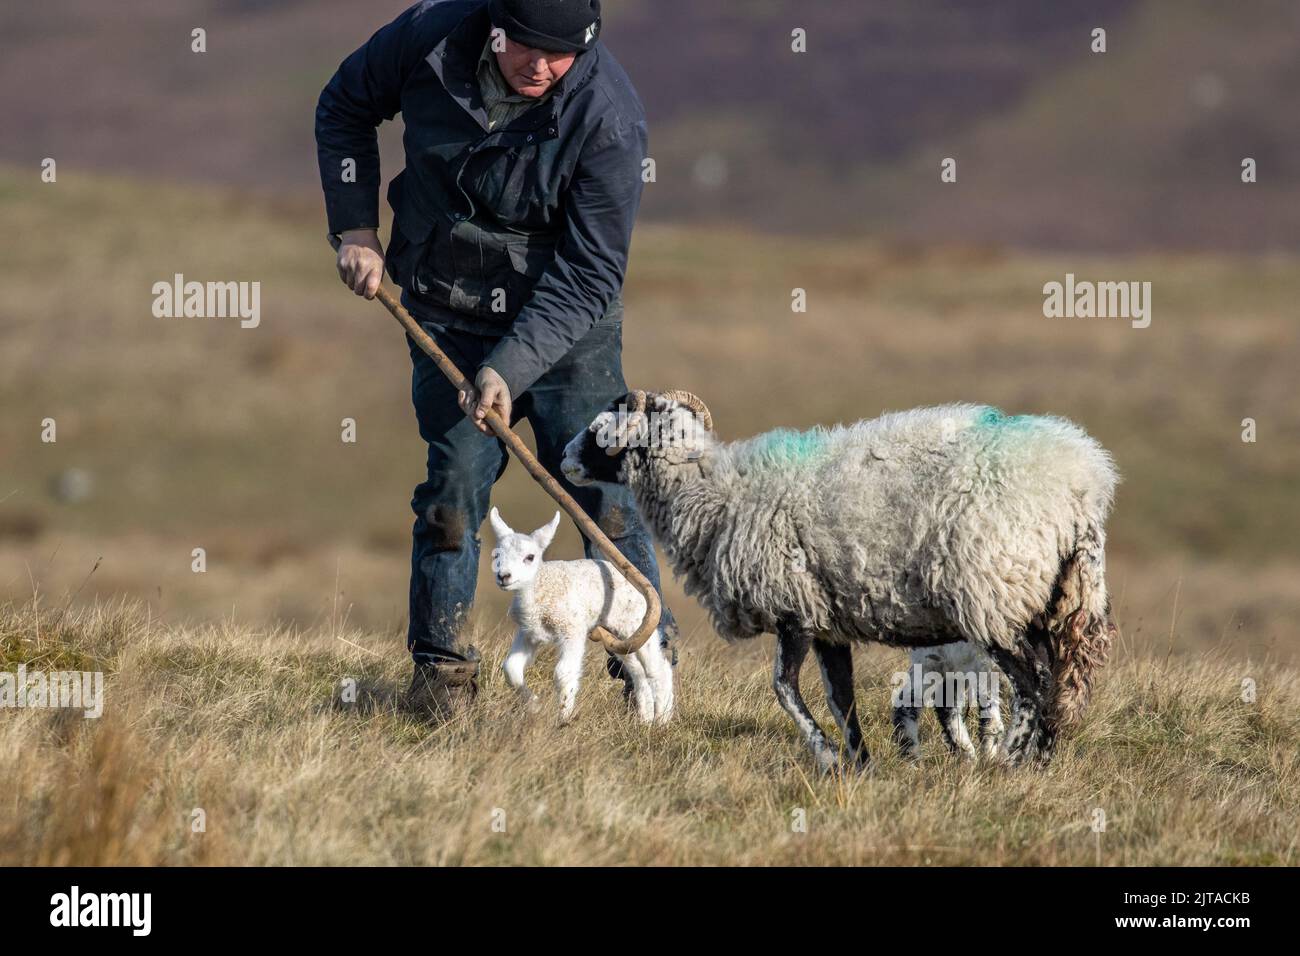 Landwirt in Aktion, der Lamm mit einem Hirtenknauf fängt, um zu neugeborenen Schafen zu neigen, Yorkshire, England, Großbritannien Stockfoto